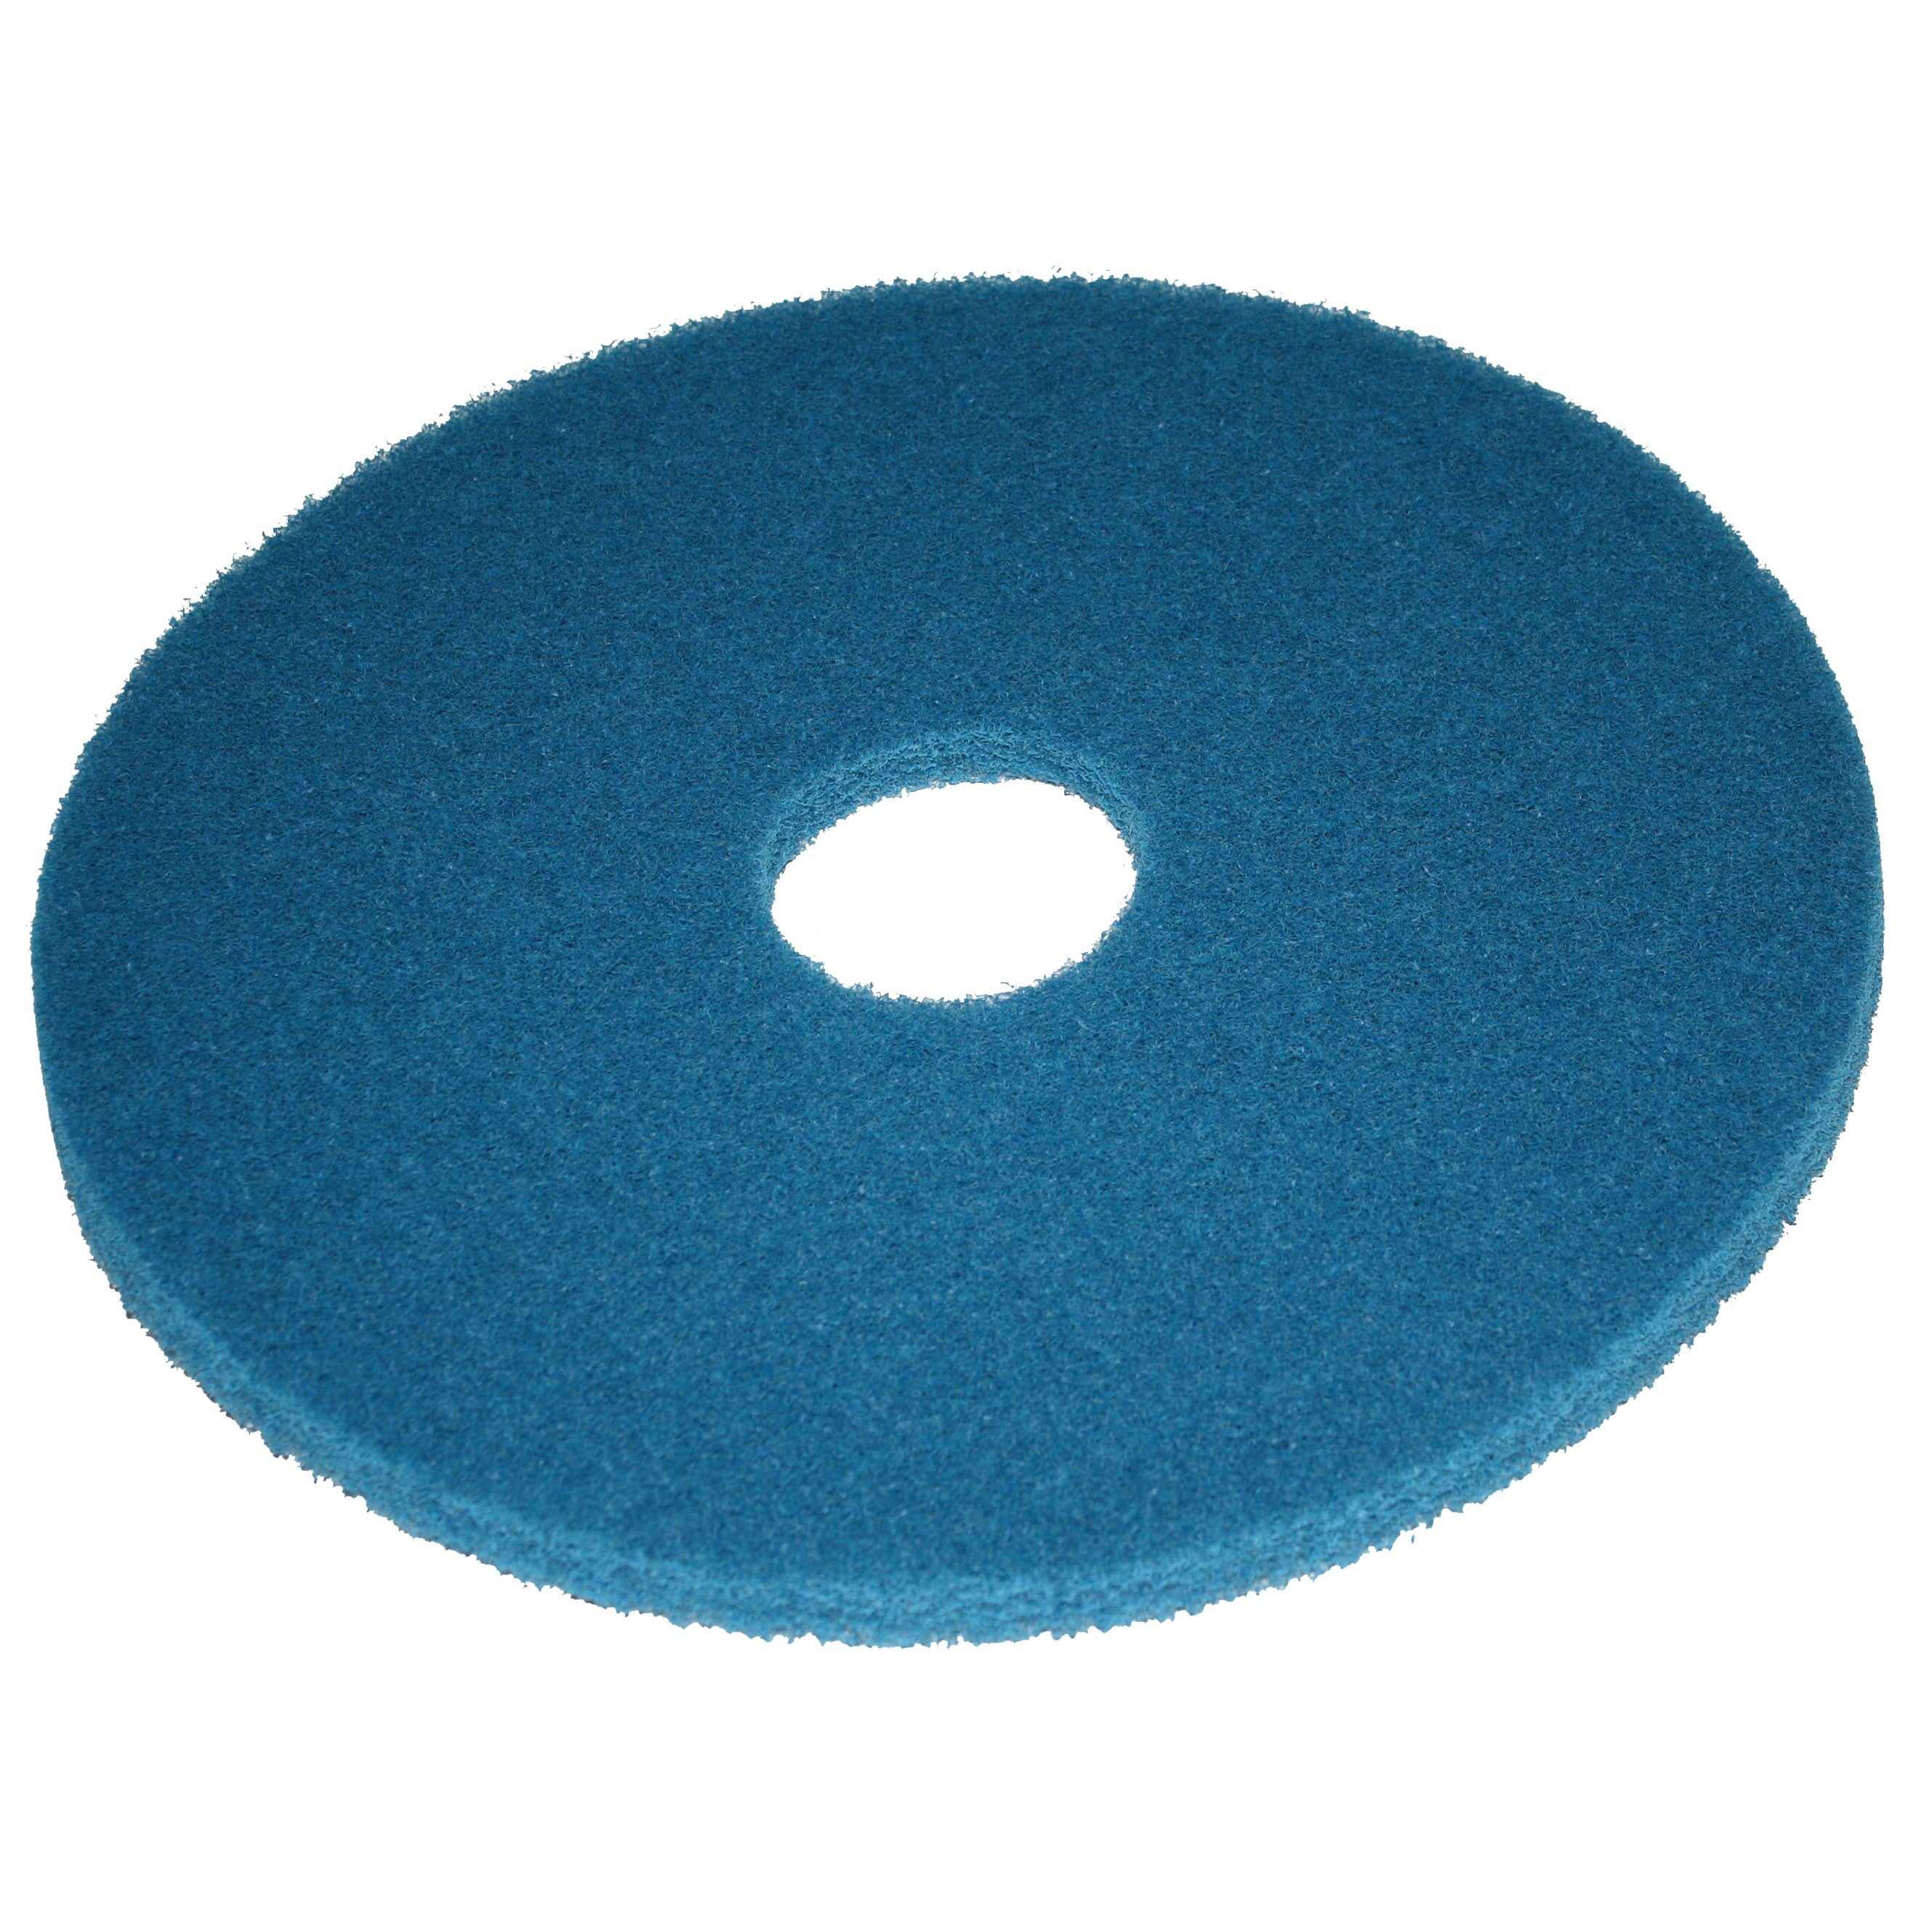 Pad bleu, Ø 203 mm, polyester